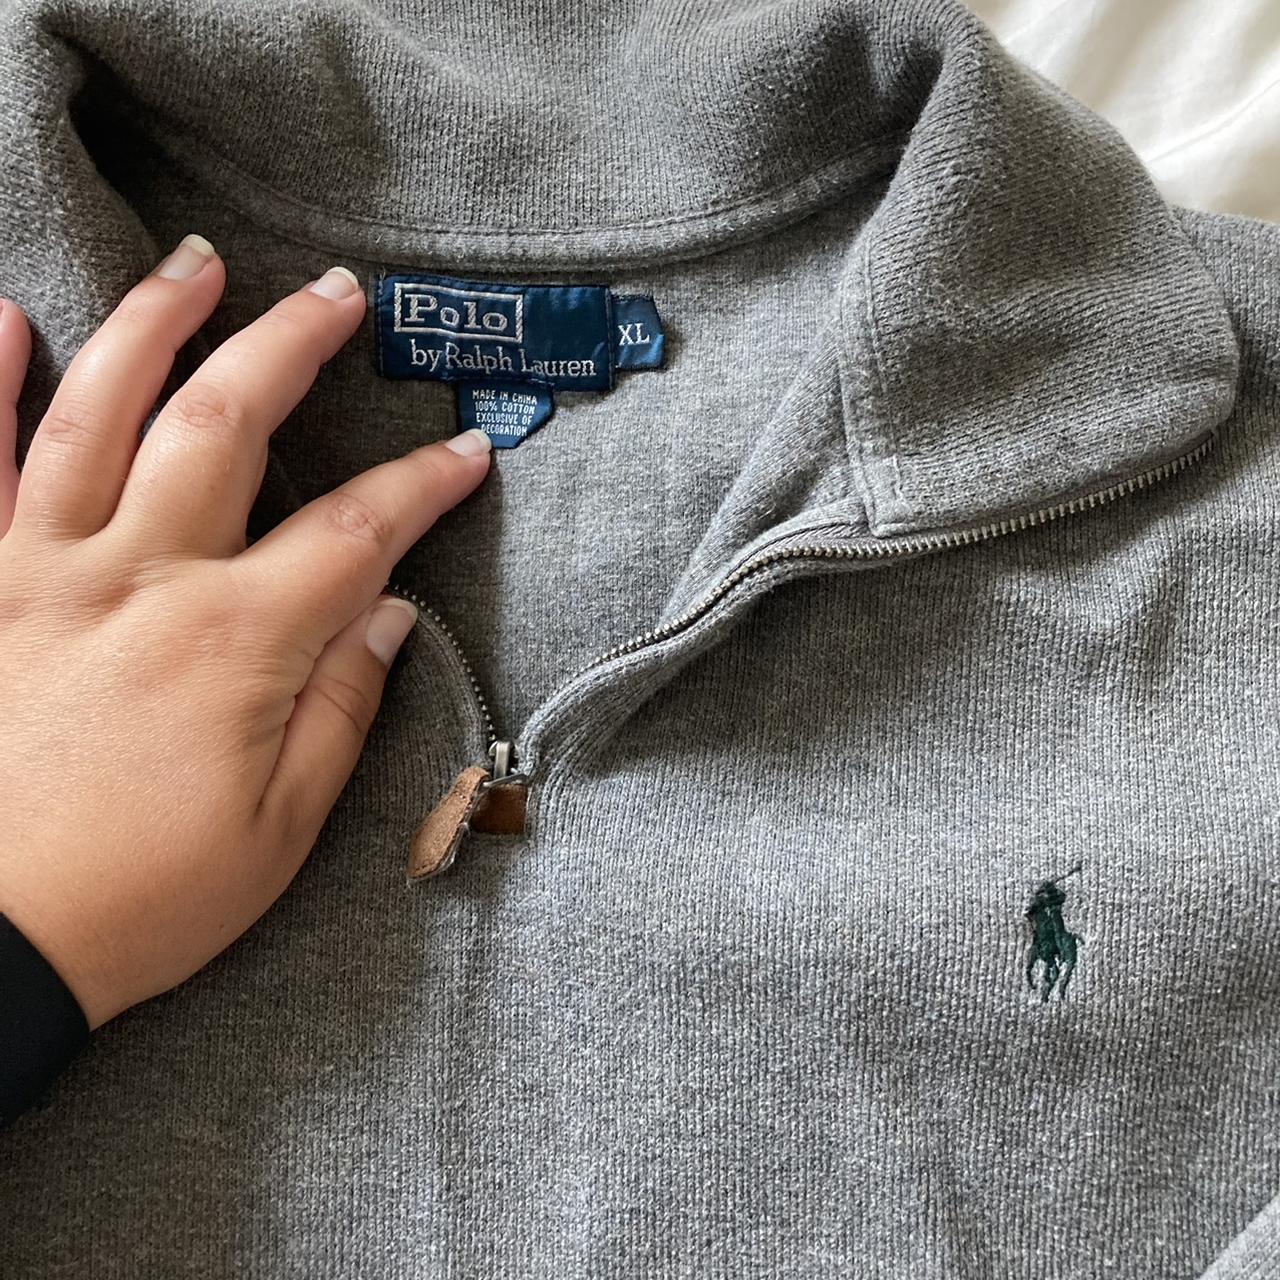 Grey Ralph Lauren zip up/ quarter zip sweatshirt.... - Depop